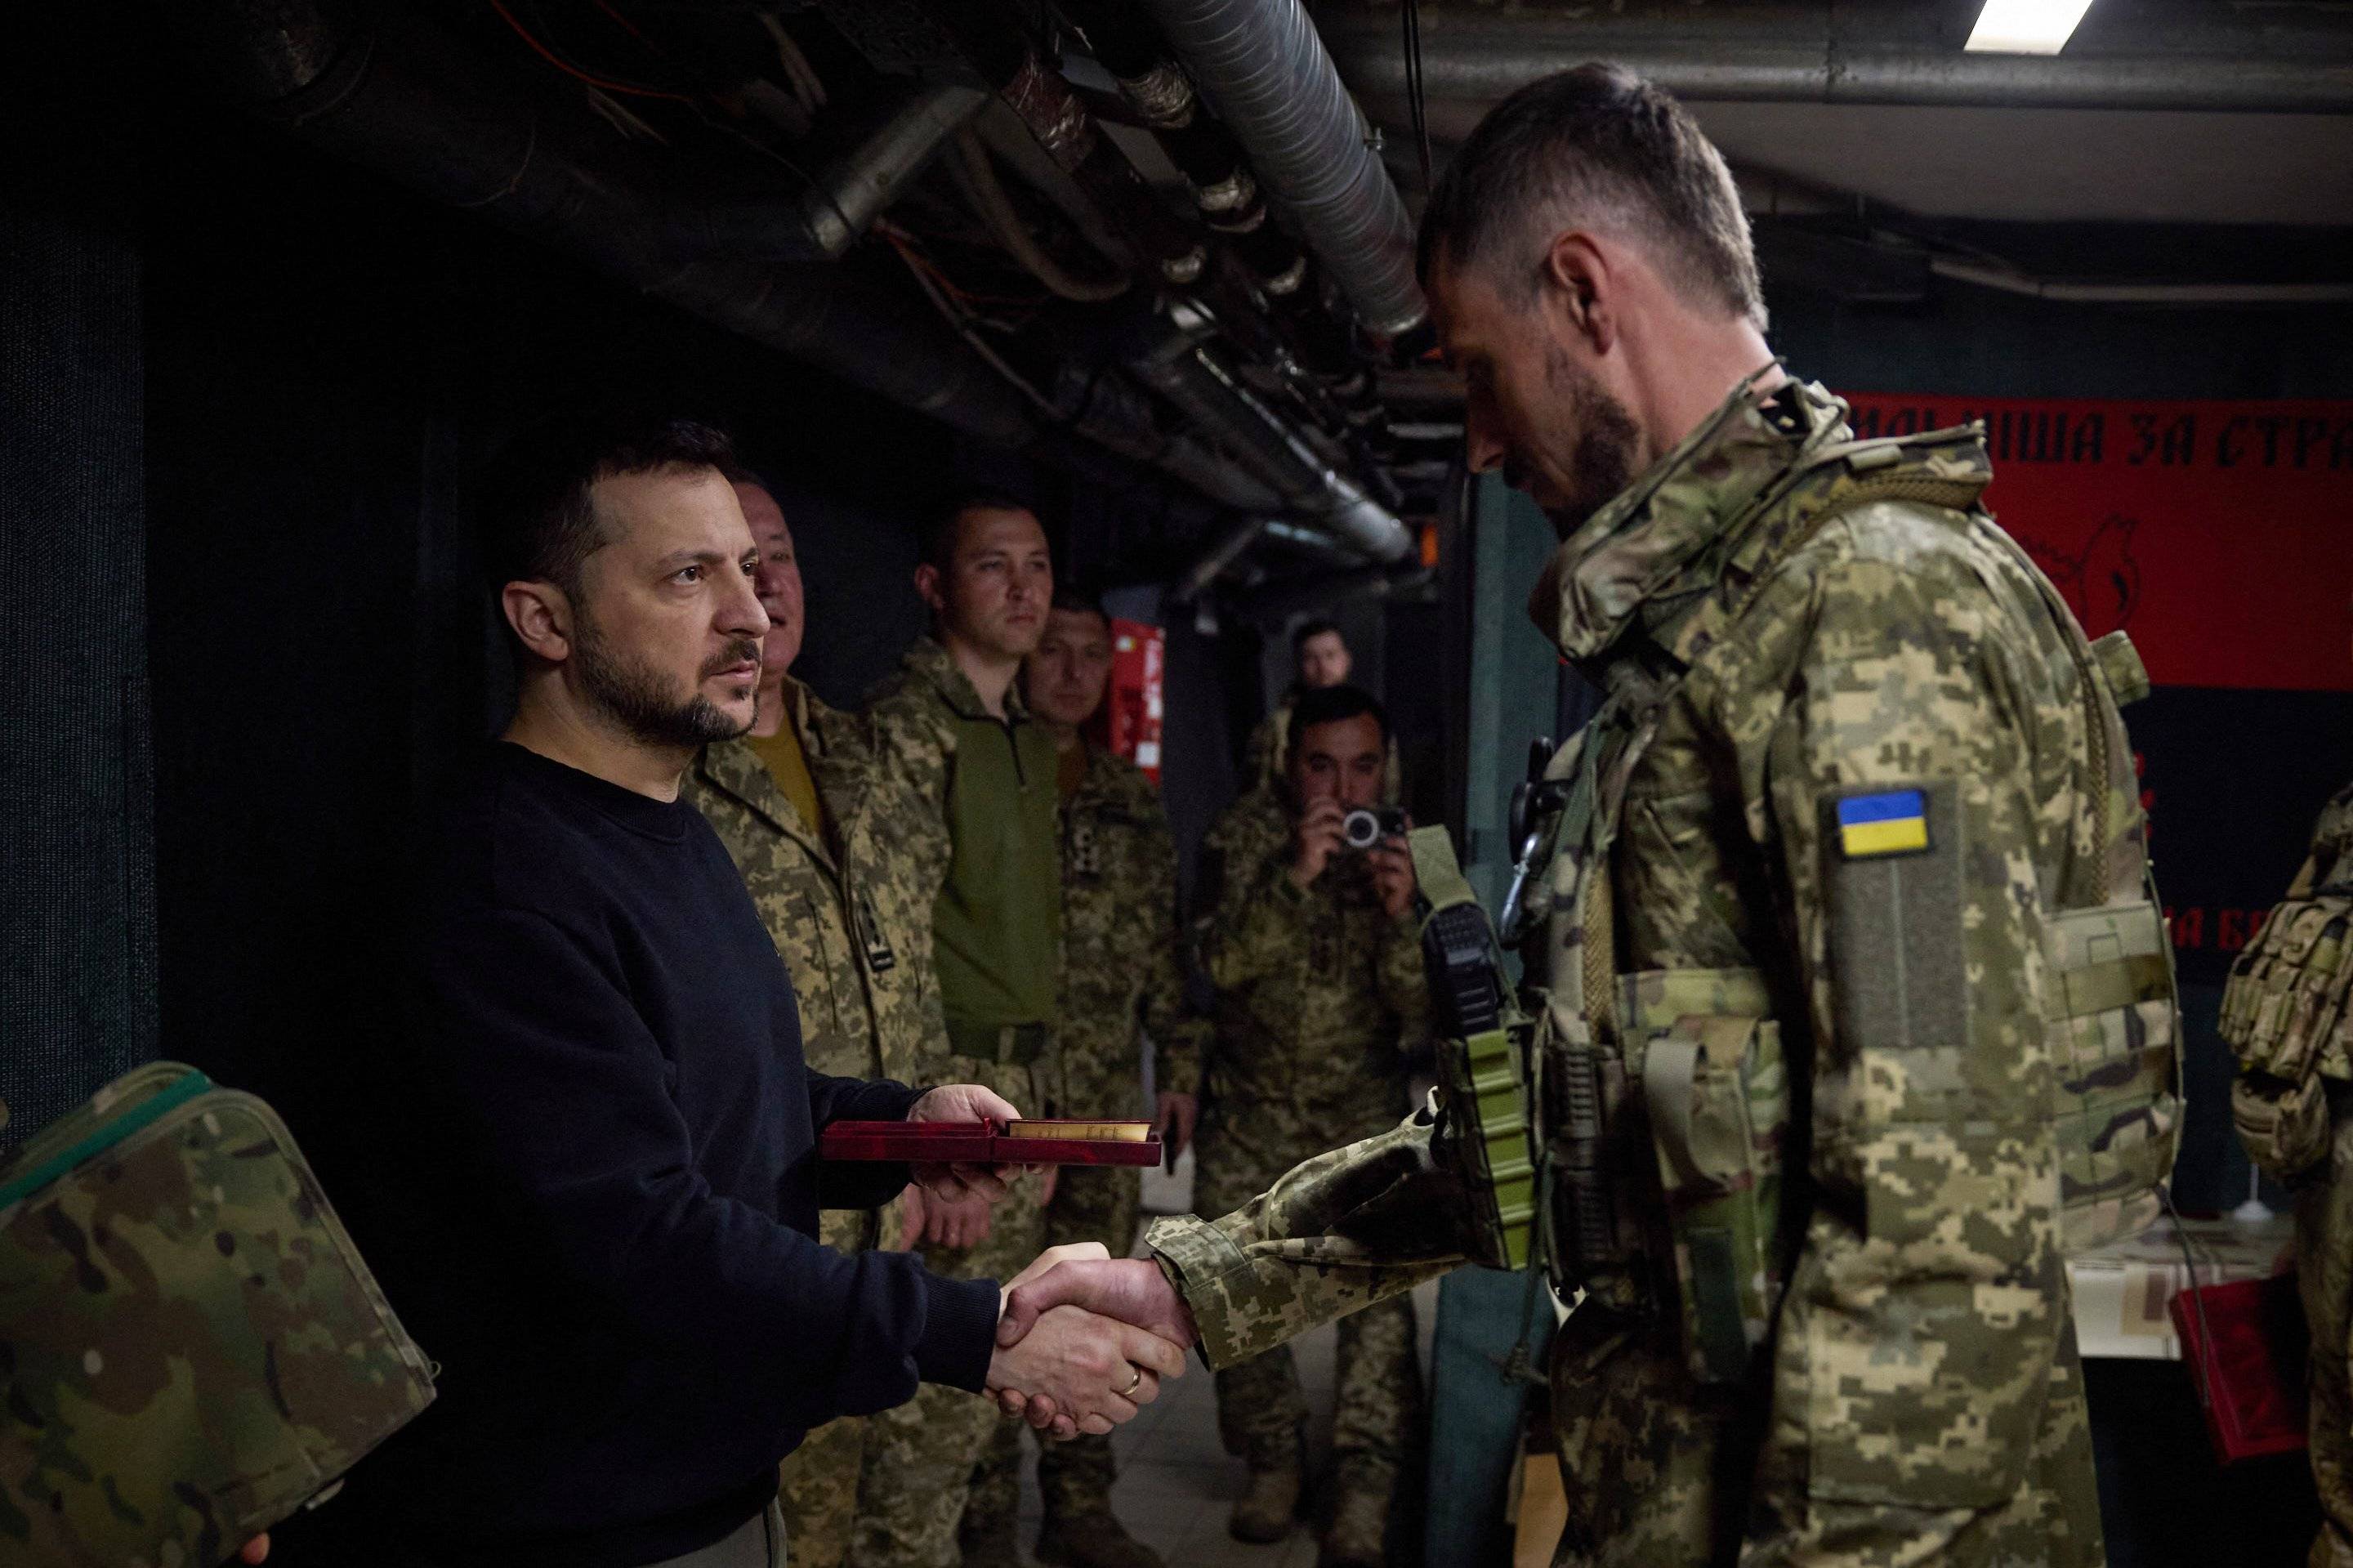 Mężczyzna w ciemnym stroju ściska rękę żołnoierzowi ukraińskiemu